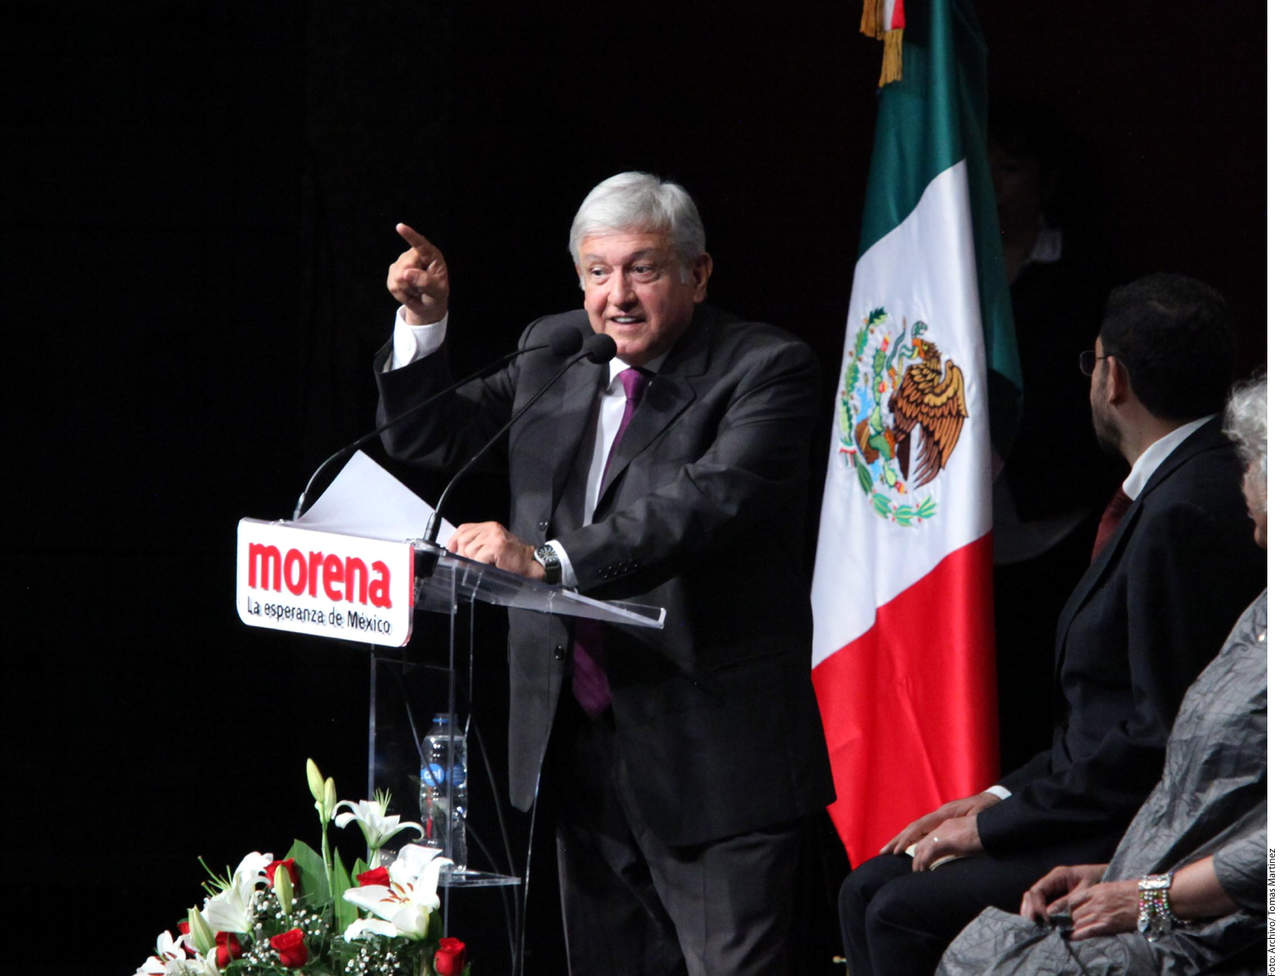 ‘Por su boca’. Andrés Manuel López Obrador dijo que con tal de alcanzar la paz en el país y para
que no haya violencia, podría convocar a un diálogo para que se otorgue amnistía a los victimarios,
siempre y cuando se cuente con la aprobación de las víctimas. (AGENCIA REFORMA) 